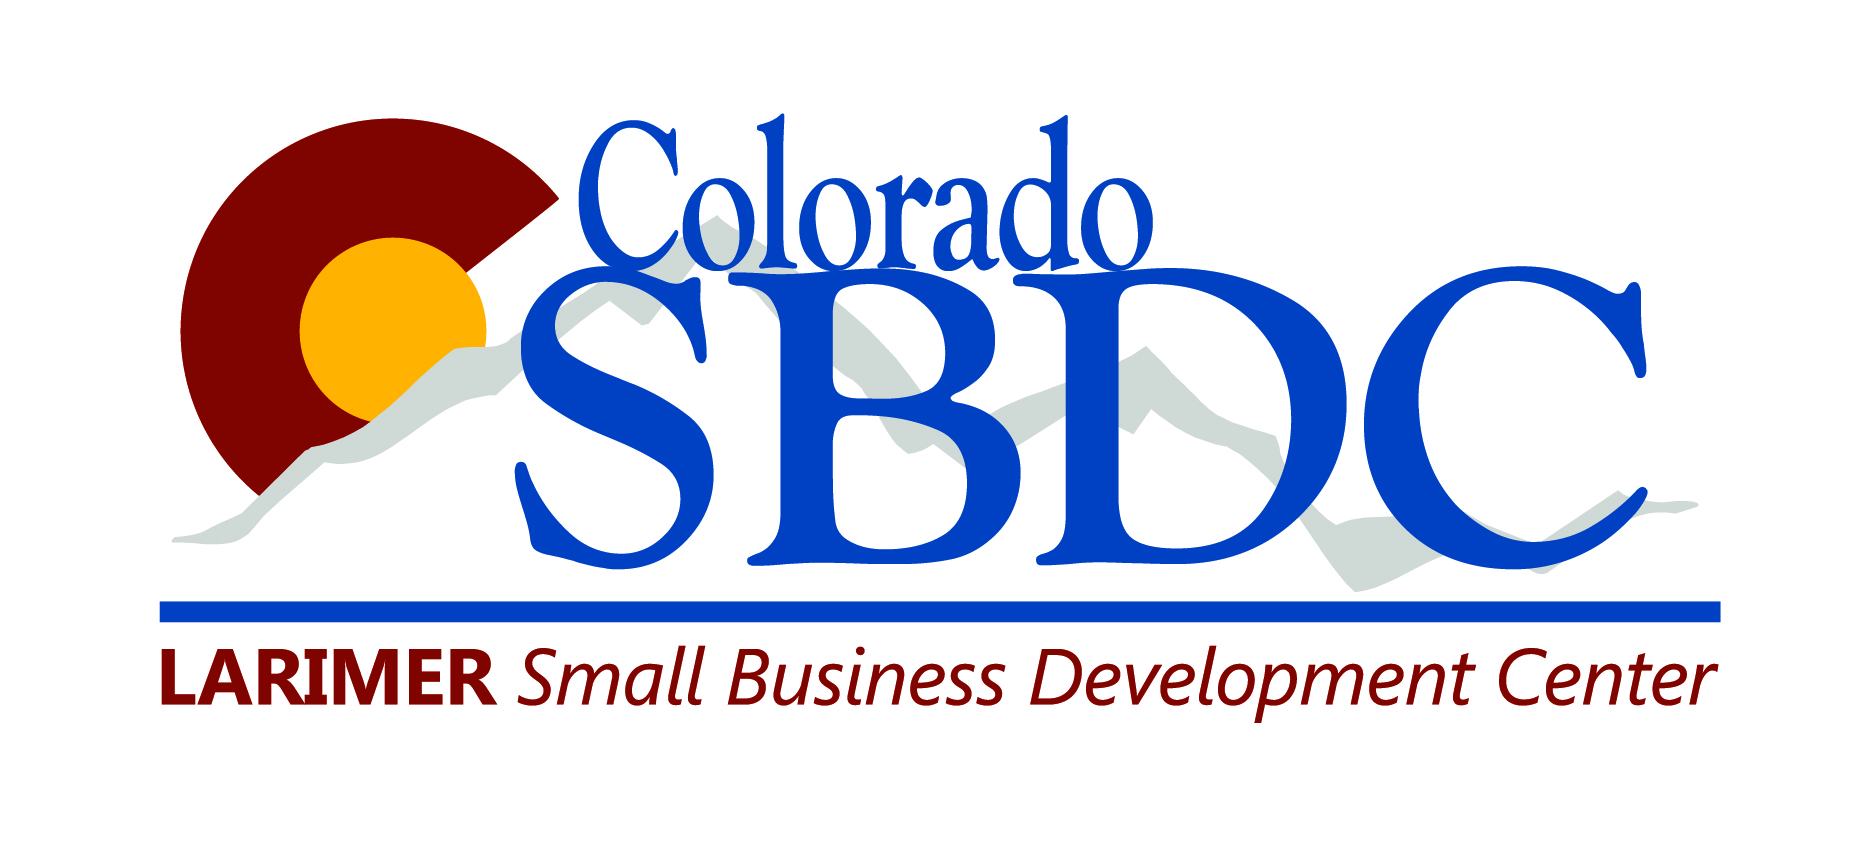 Colorado SBDC